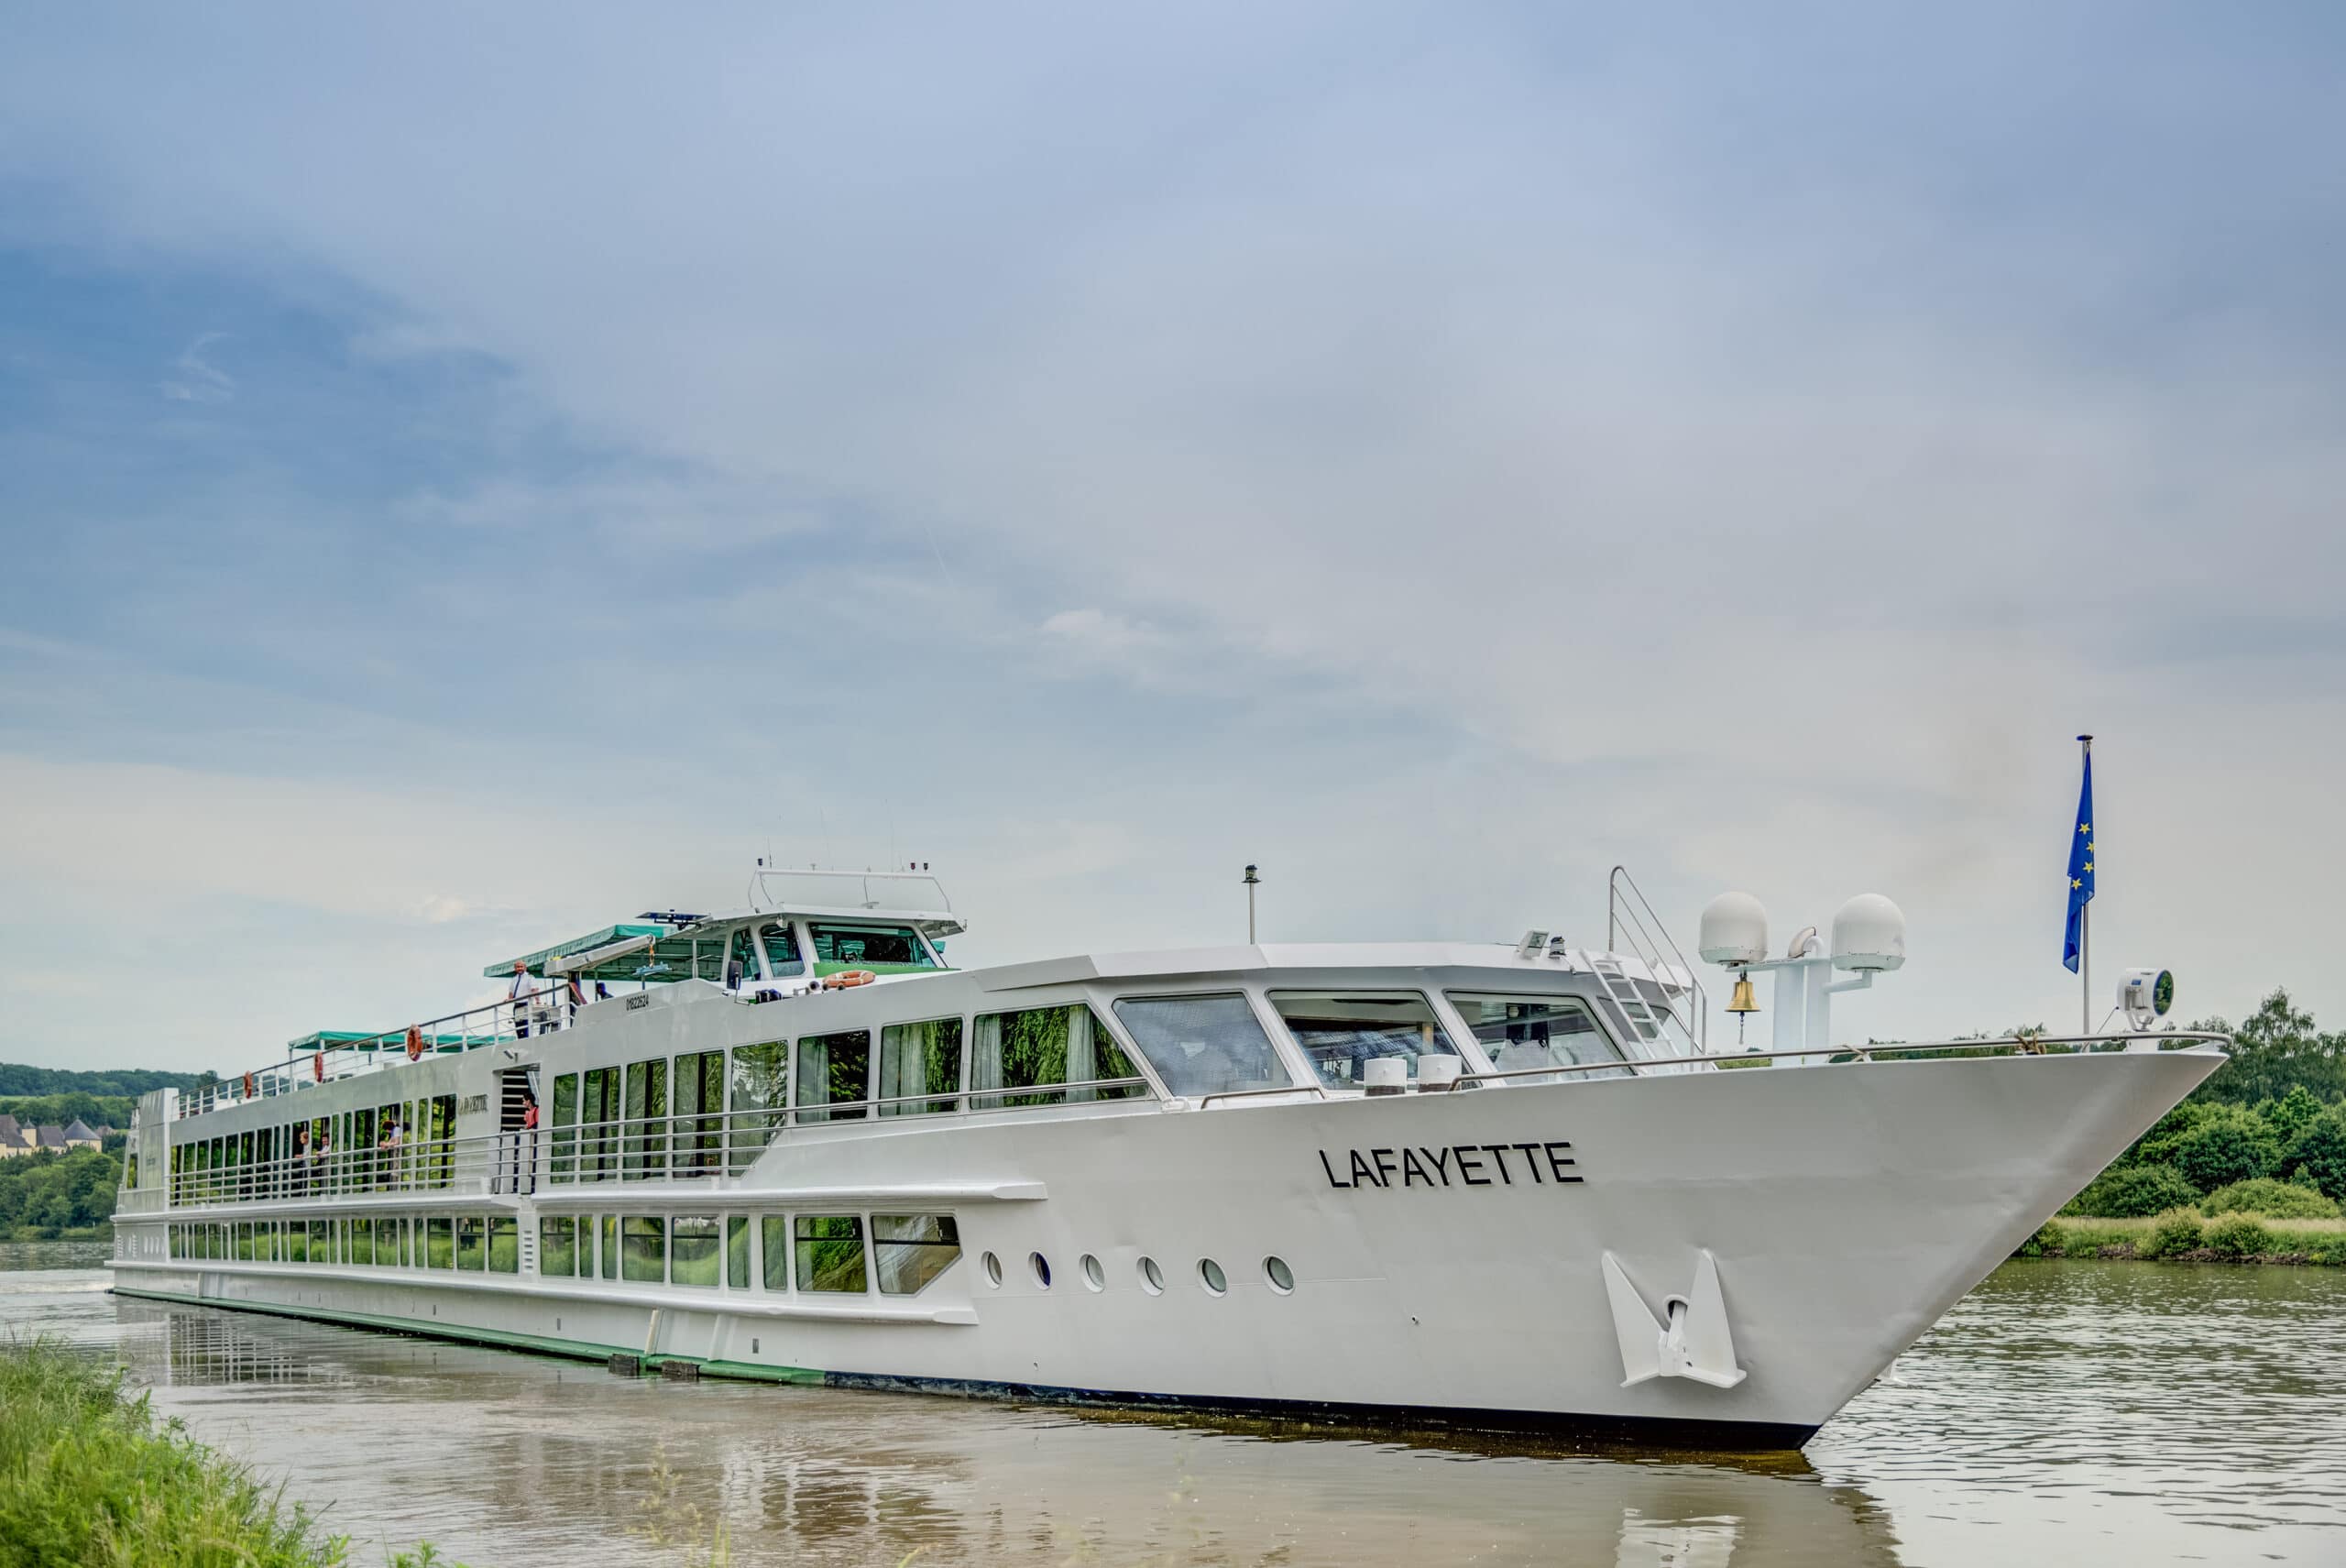 Rivierschip-CroisiEurope-MS-Lafayette-Cruise-Schip (3)